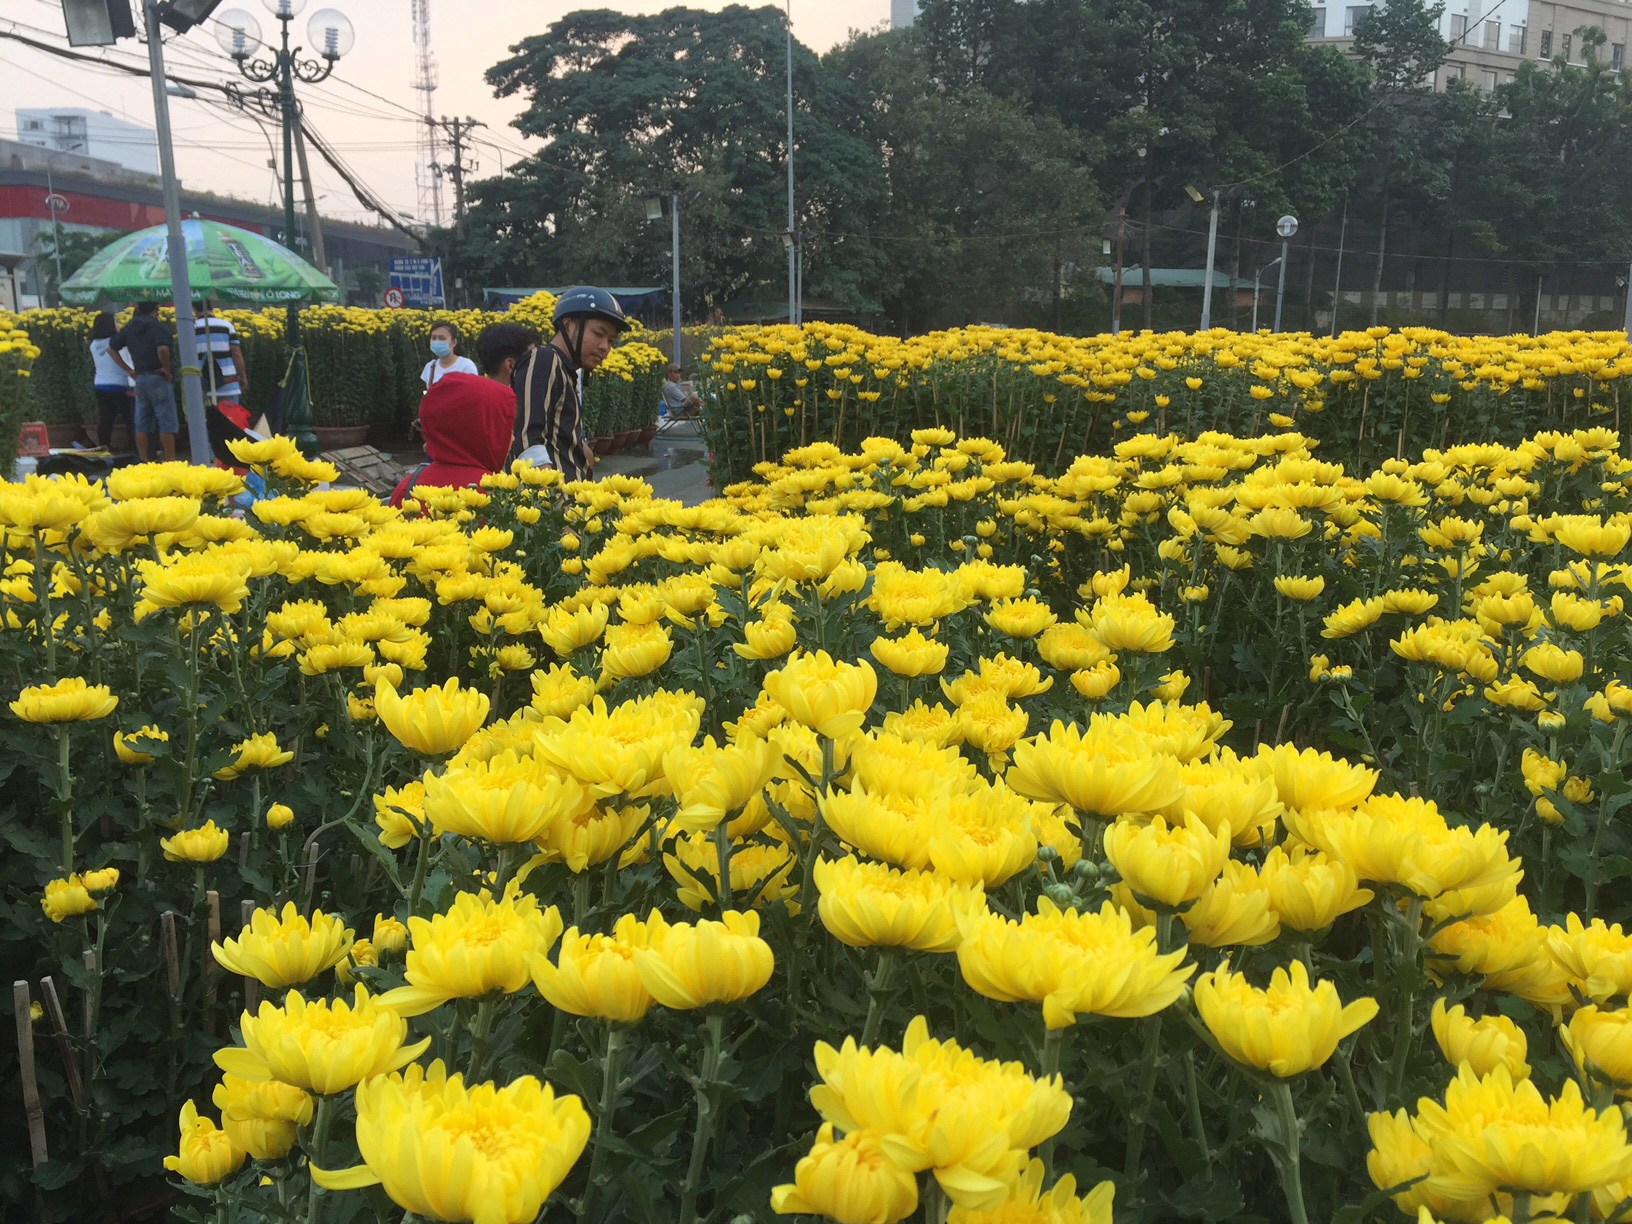 Gần 2000 ảnh chợ hoa ngày tết cổ truyền Việt Nam tuyệt đẹp  Mua bán hình  ảnh shutterstock giá rẻ chỉ từ 3000 đ trong 2 phút